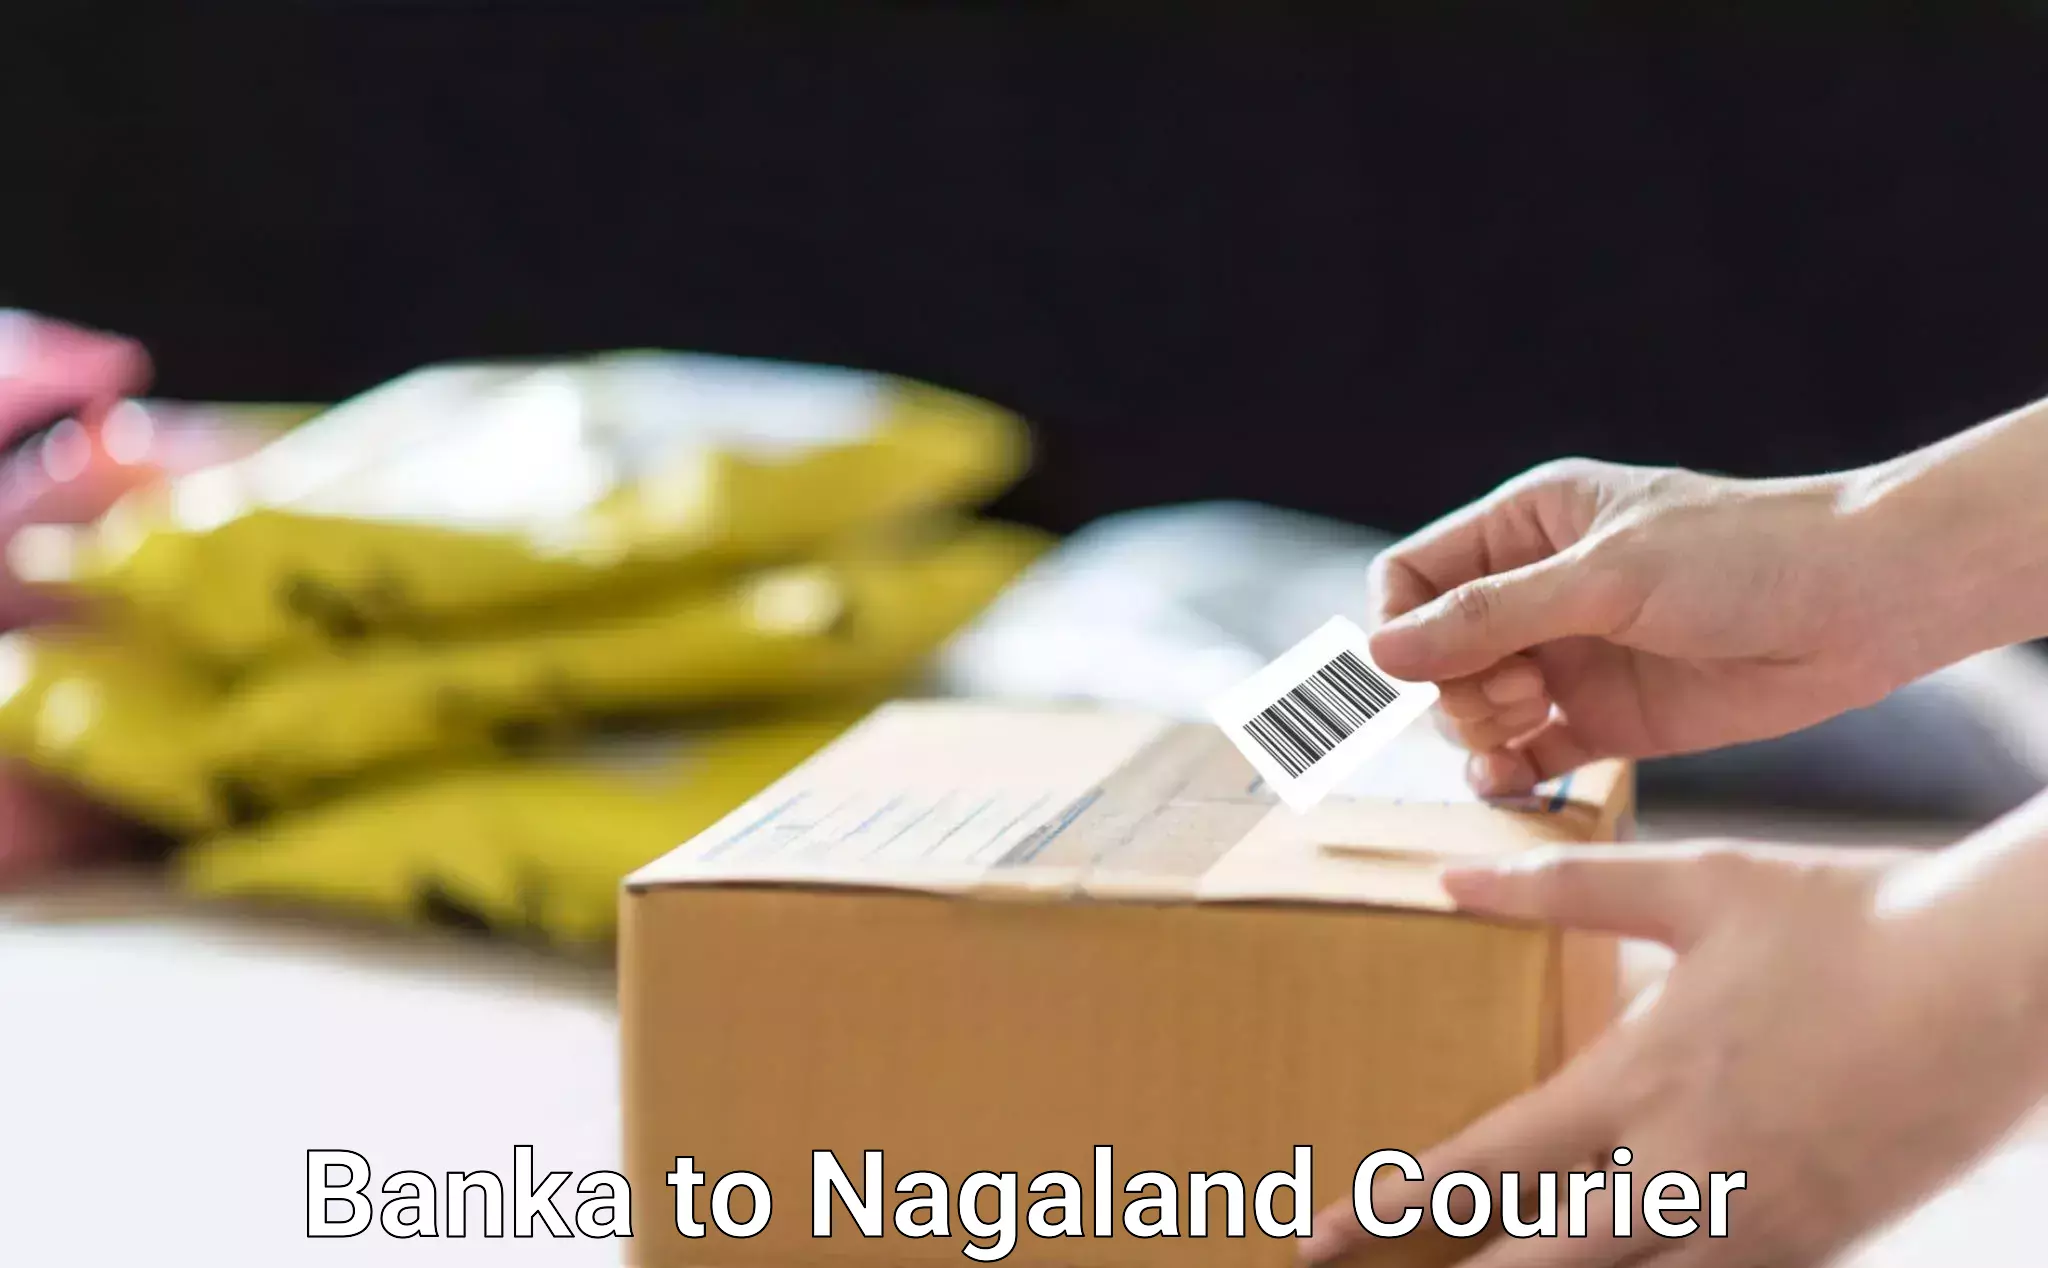 Stress-free moving Banka to Nagaland